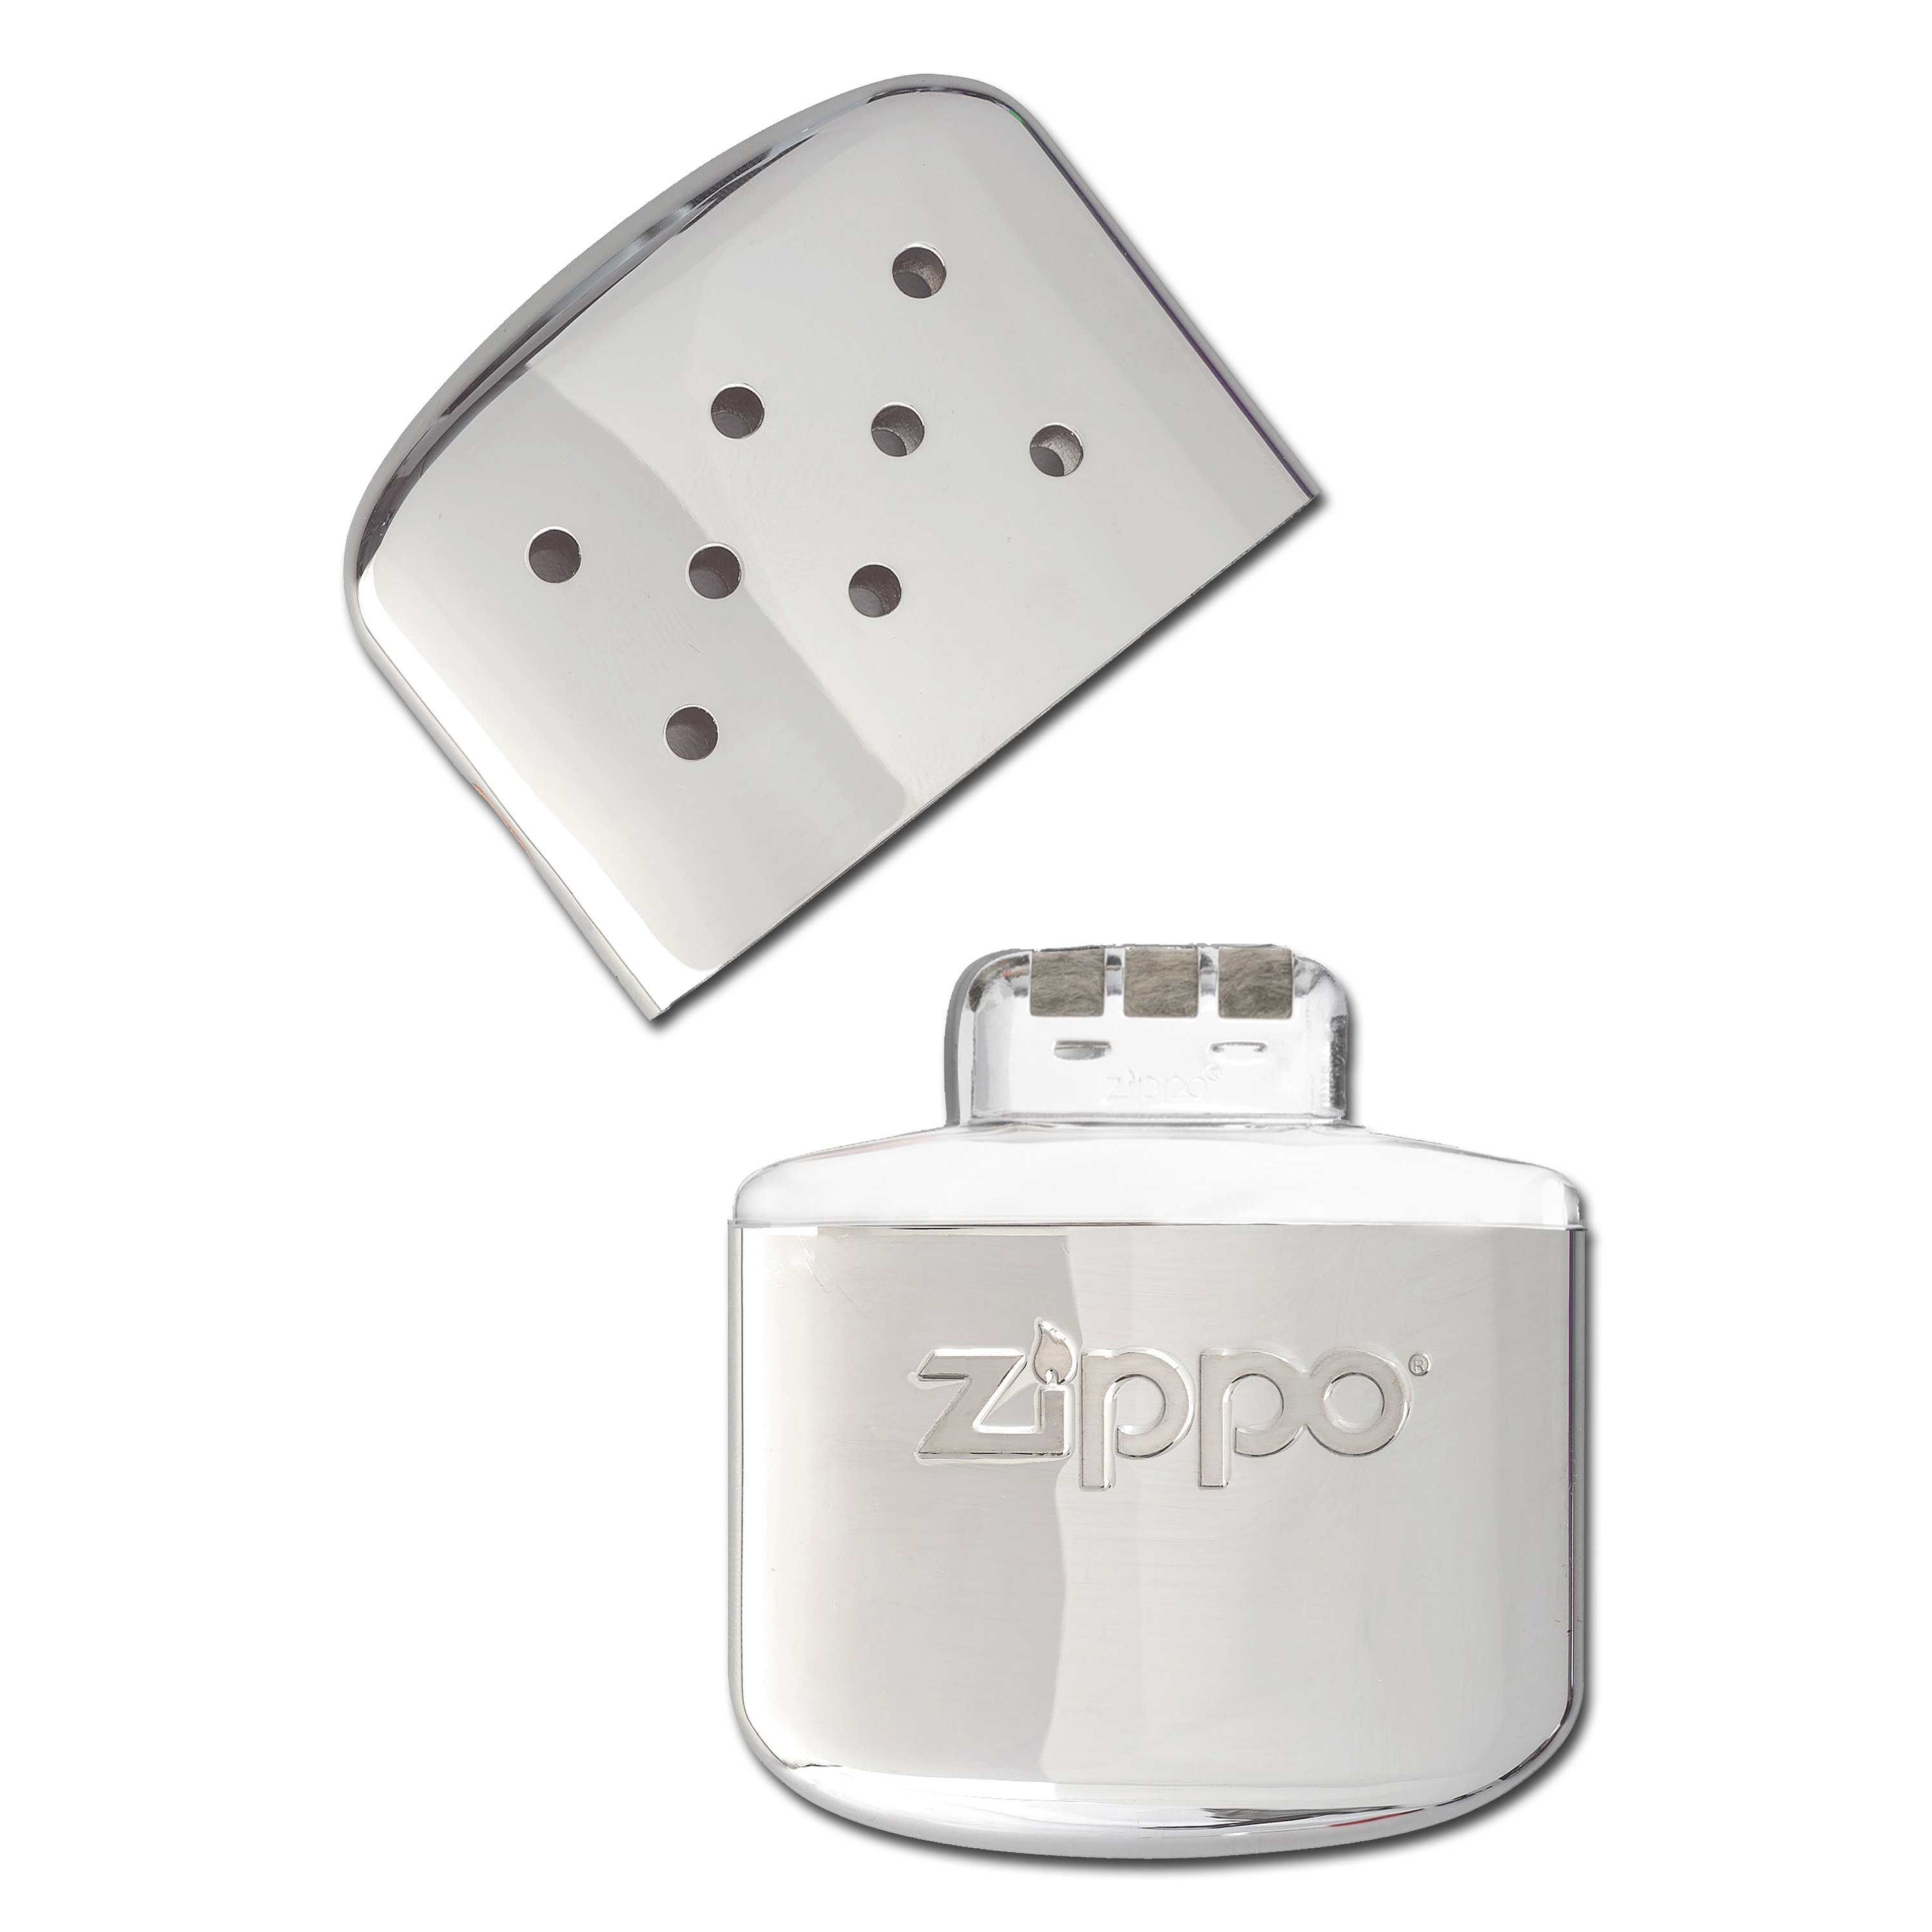 Achat en ligne chauffe-mains rechargeables, Zippo